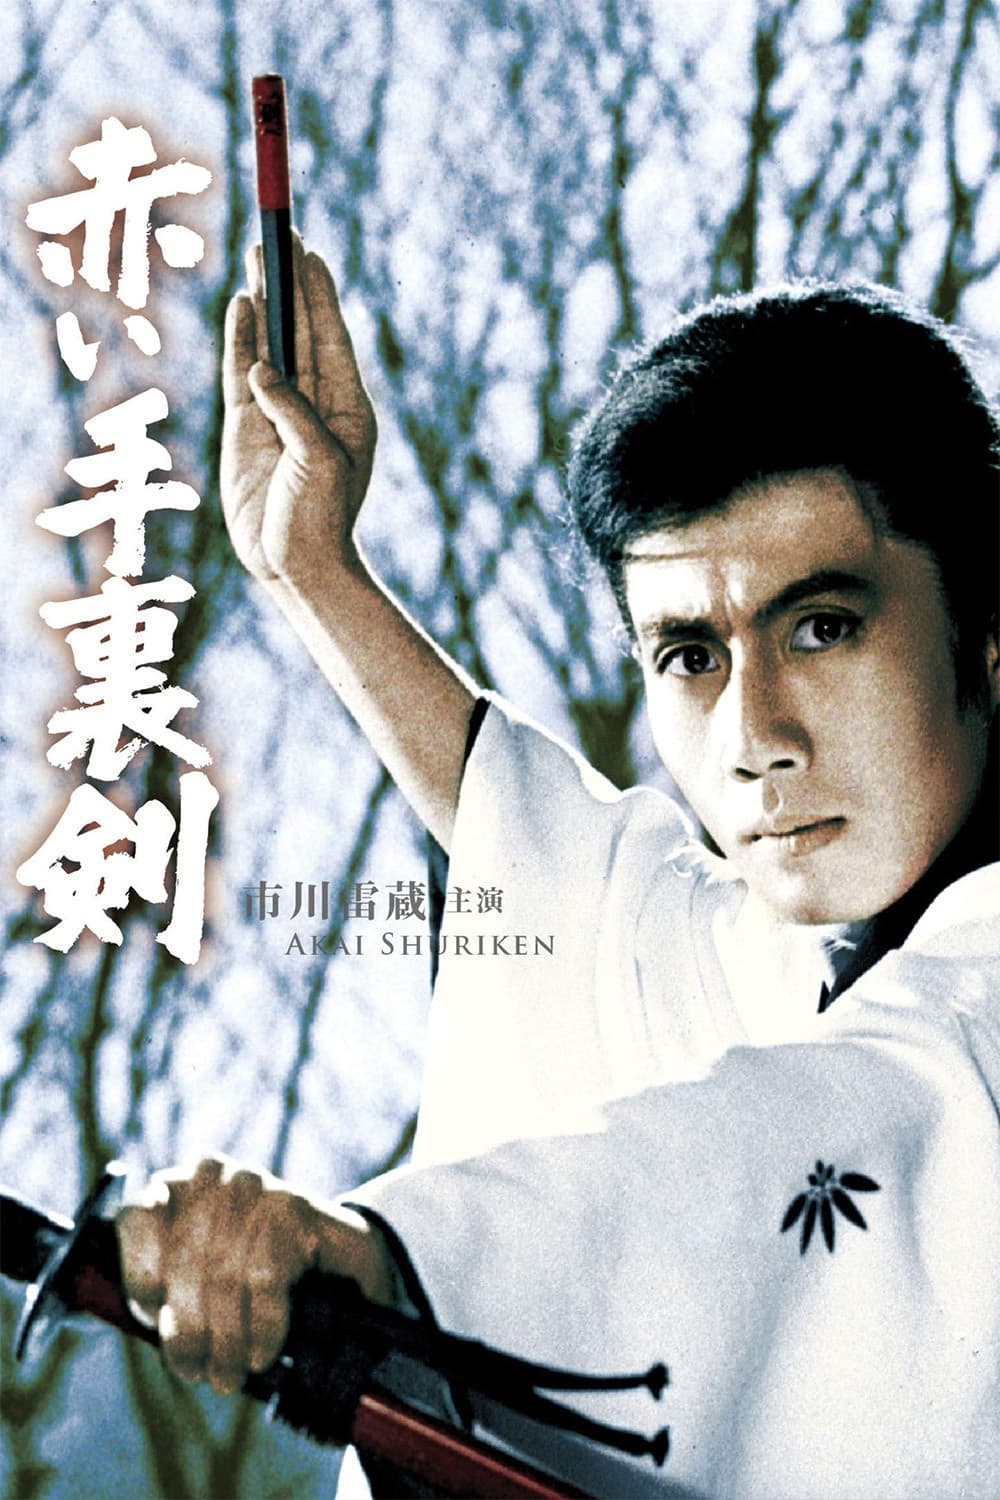 Bloody Shuriken (1965)